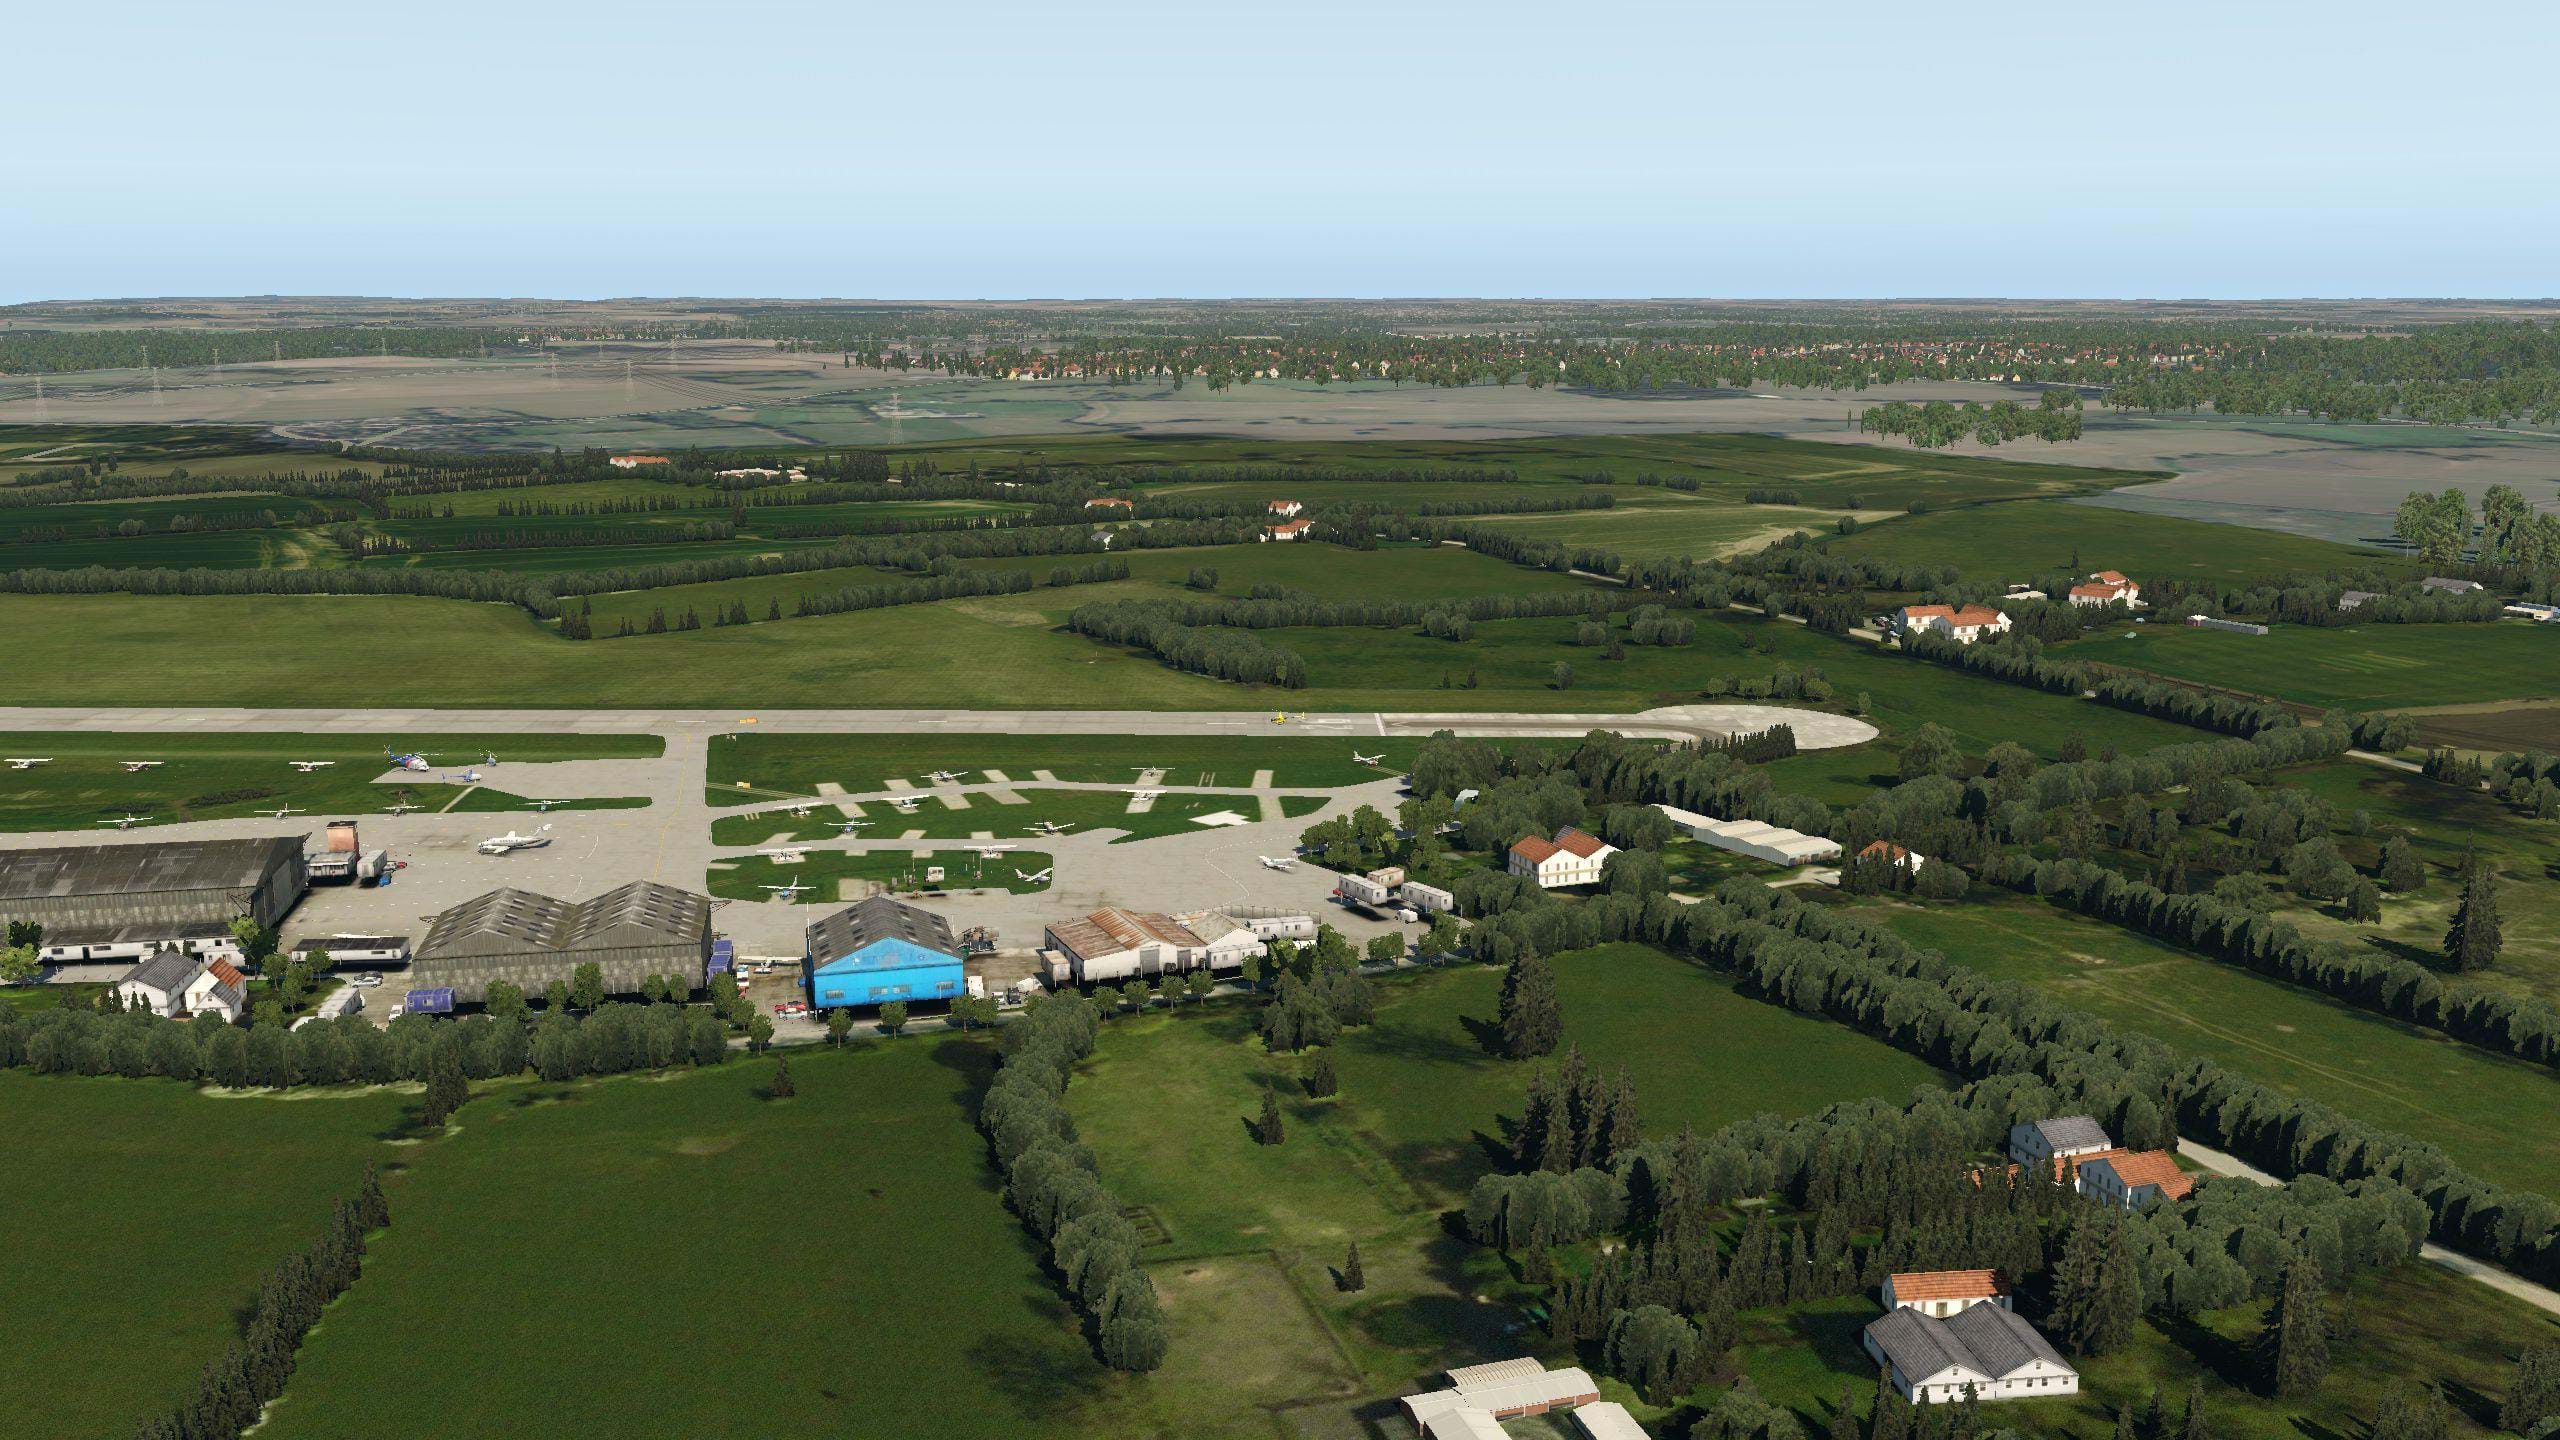 ORBX Elstree Aerodrome (EGTR) for X-plane